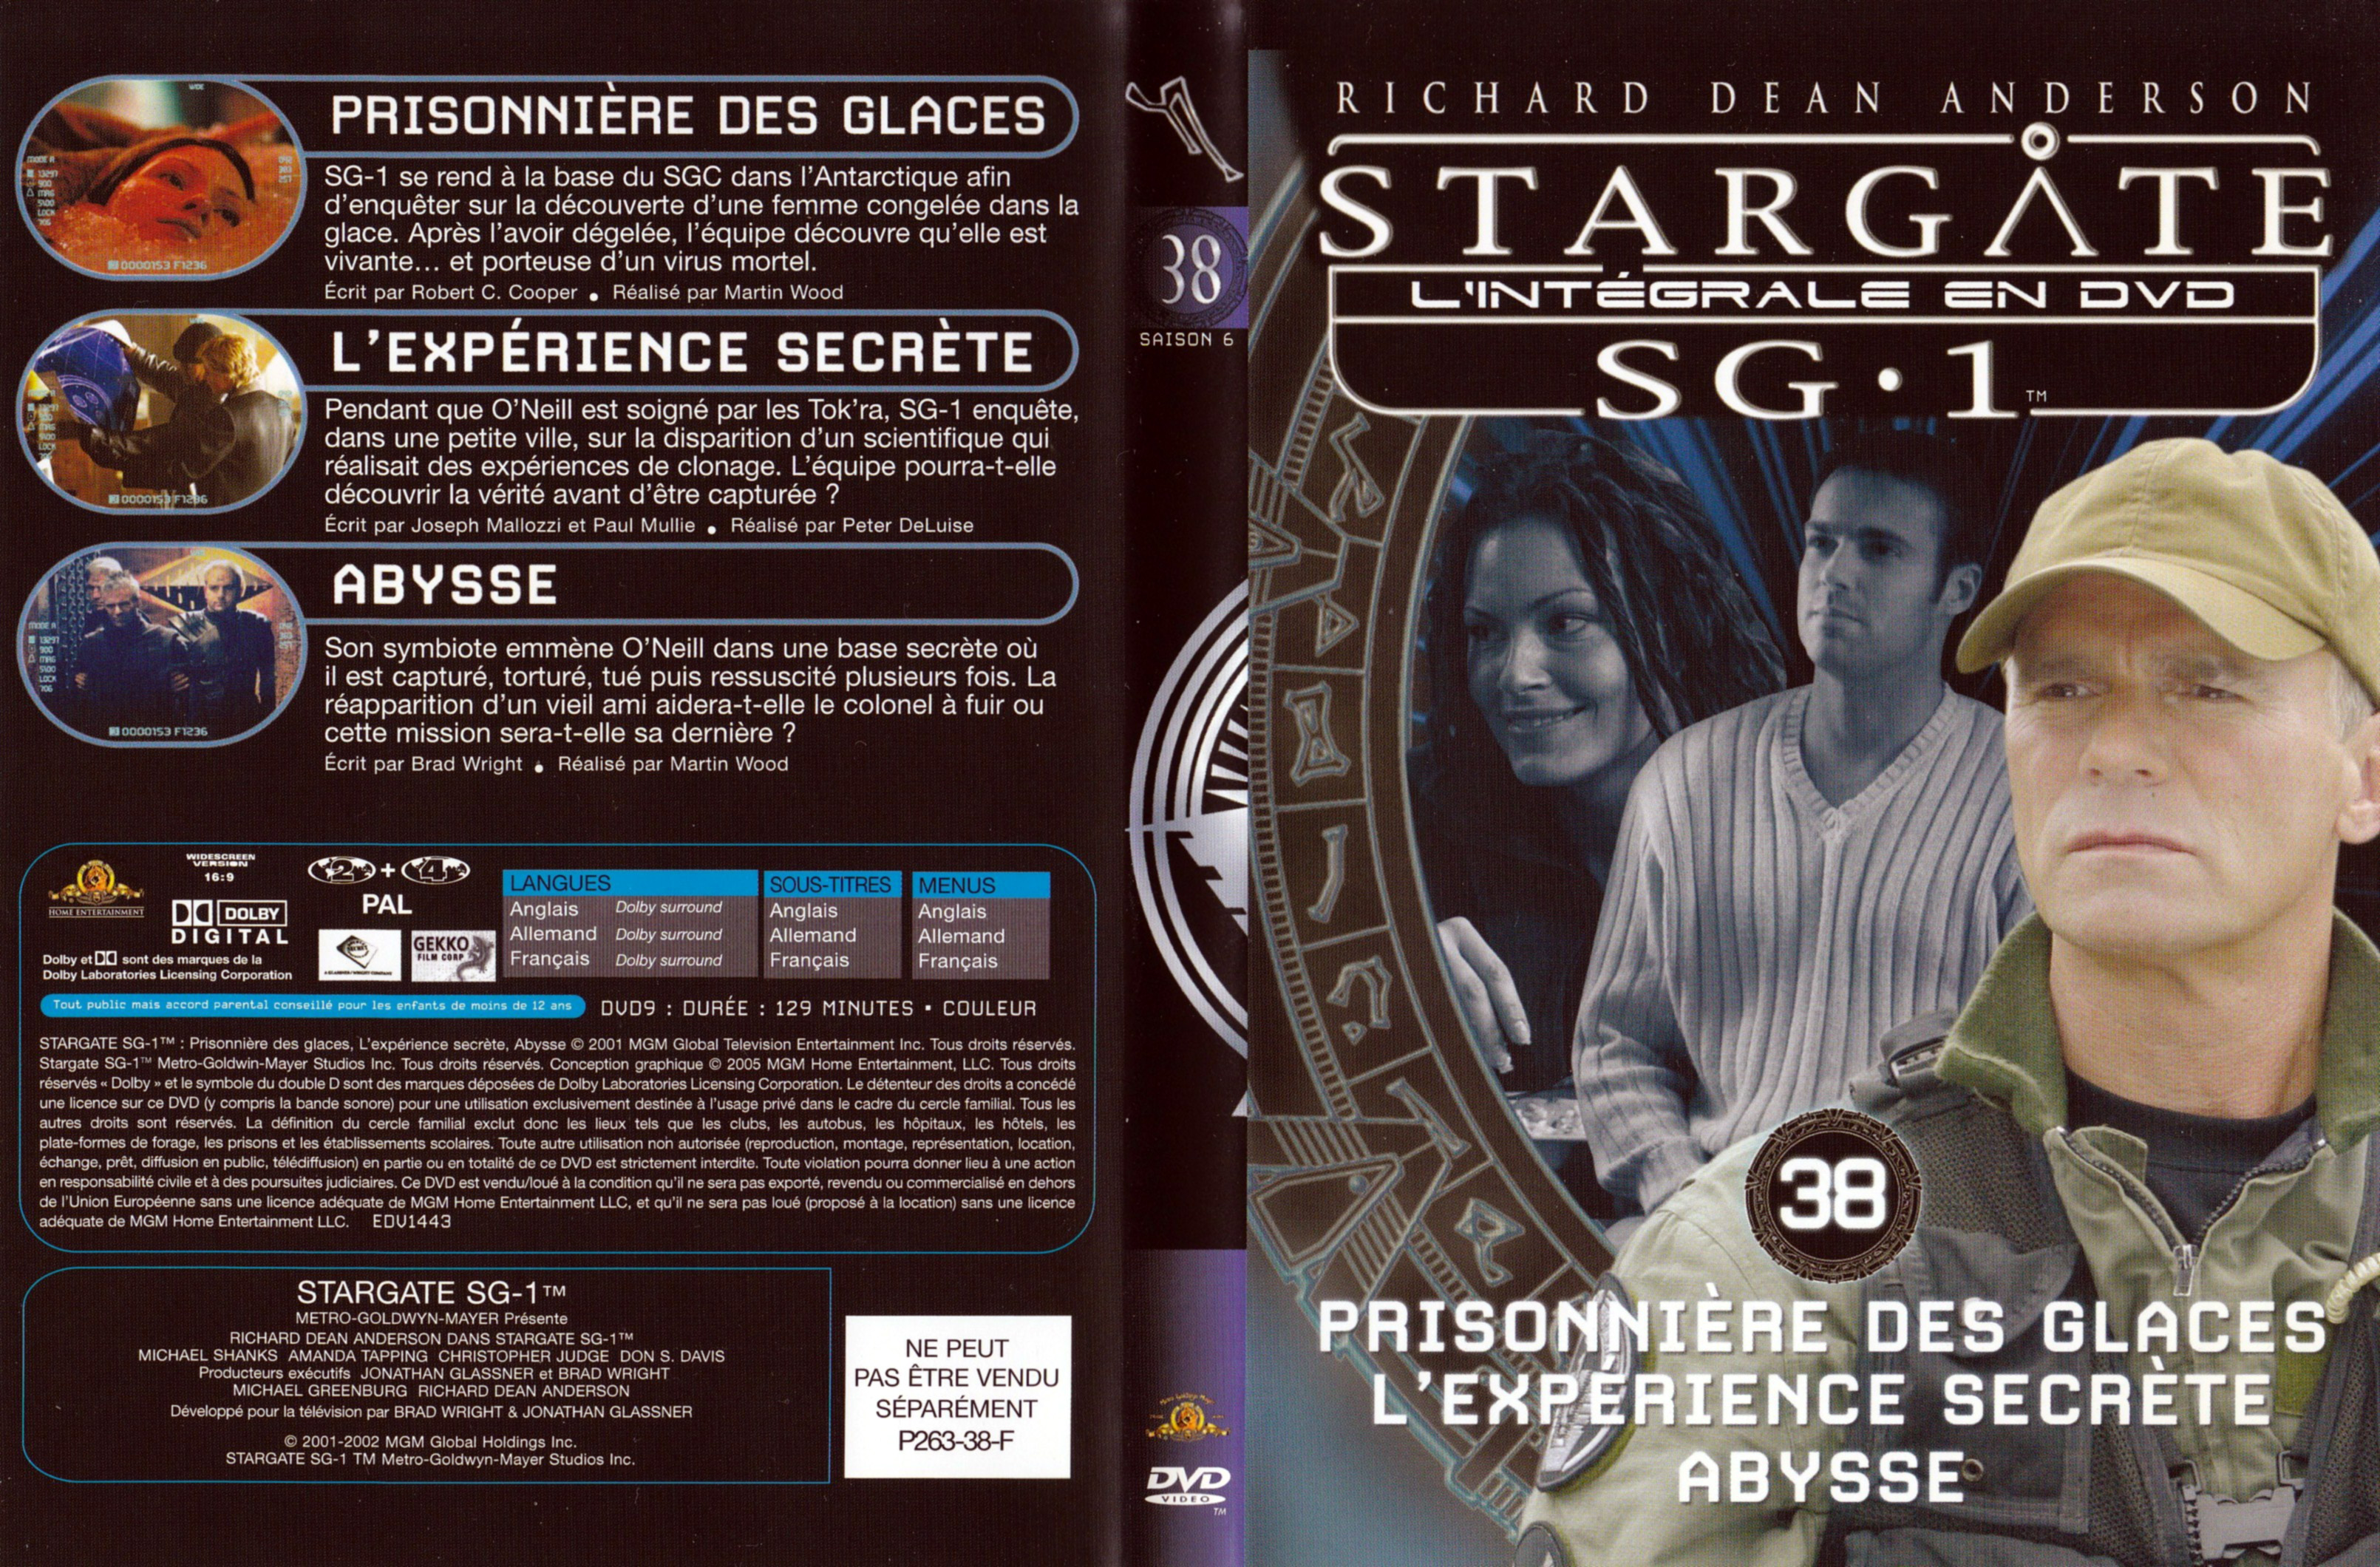 Jaquette DVD Stargate SG1 Intgrale Saison 6 vol 38